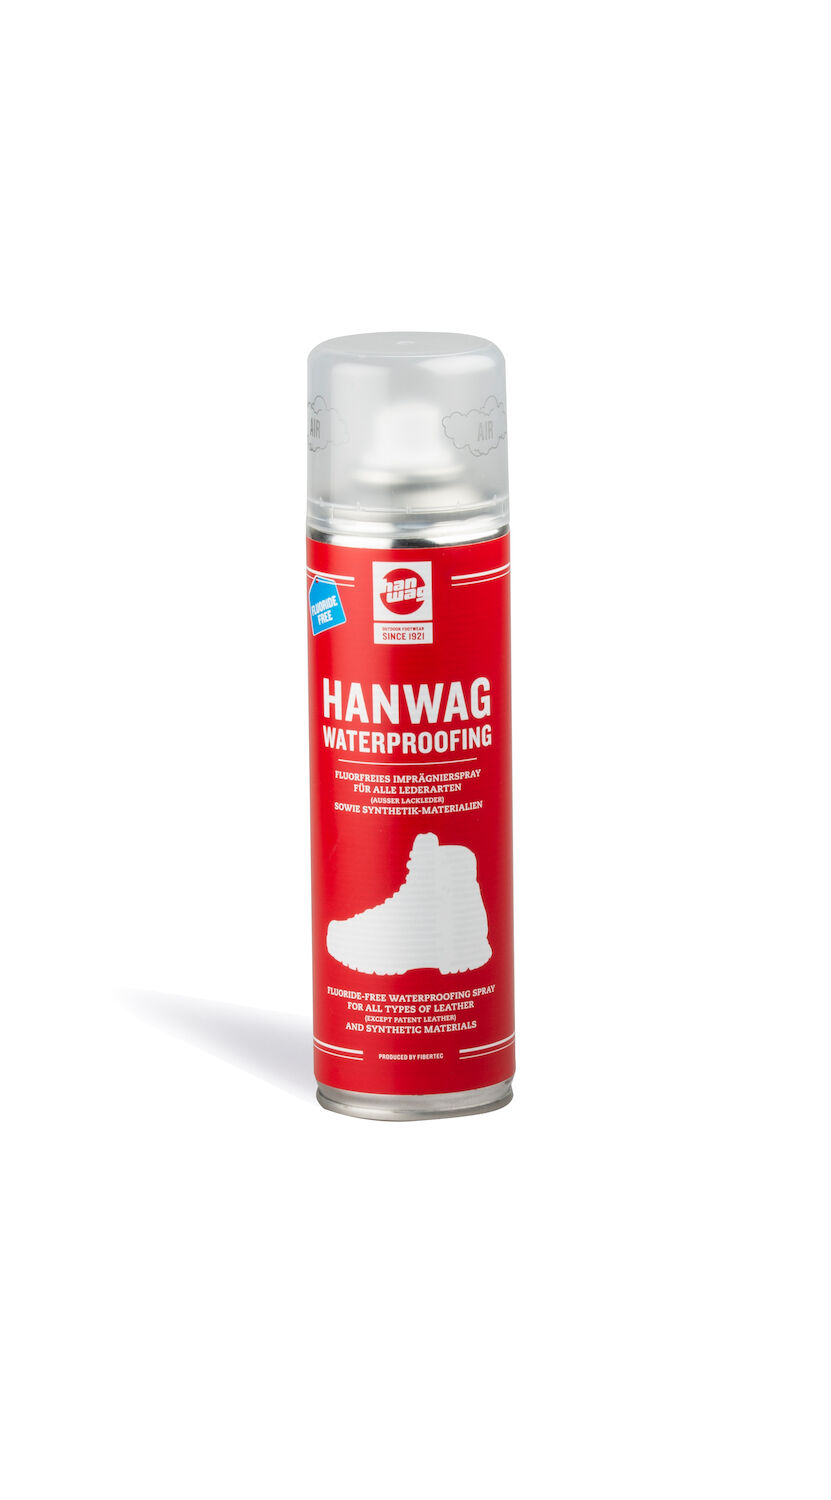 HANWAG Waterproofing Spray